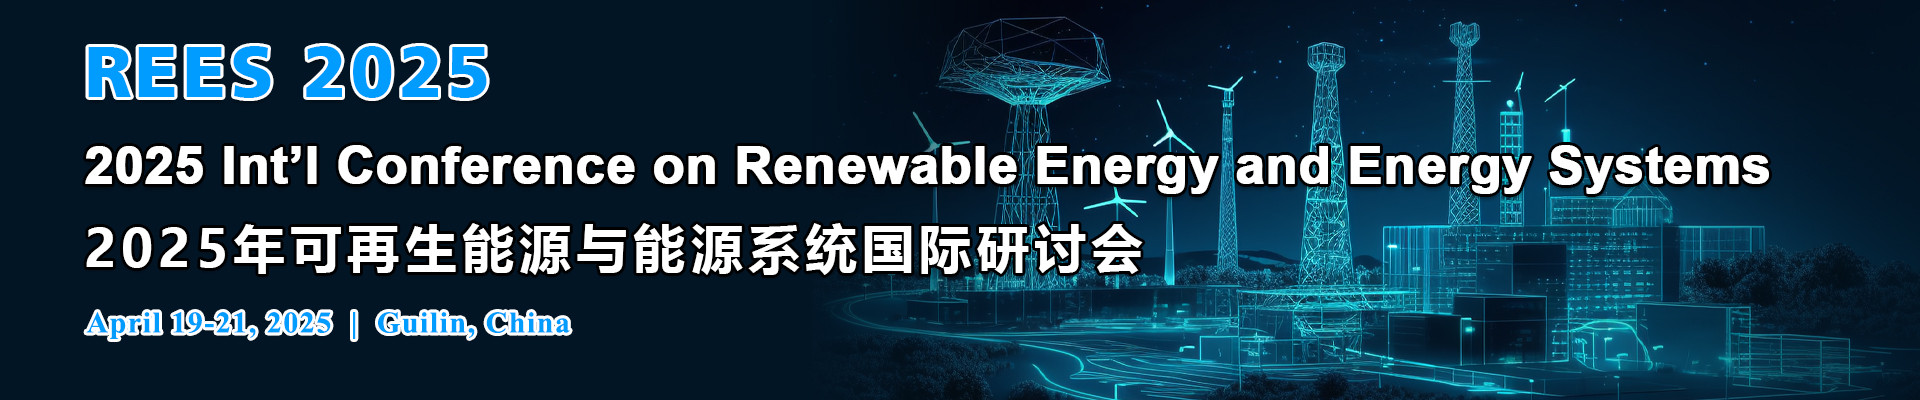 第四届可再生能源与能源系统国际研讨会(REES 2025)